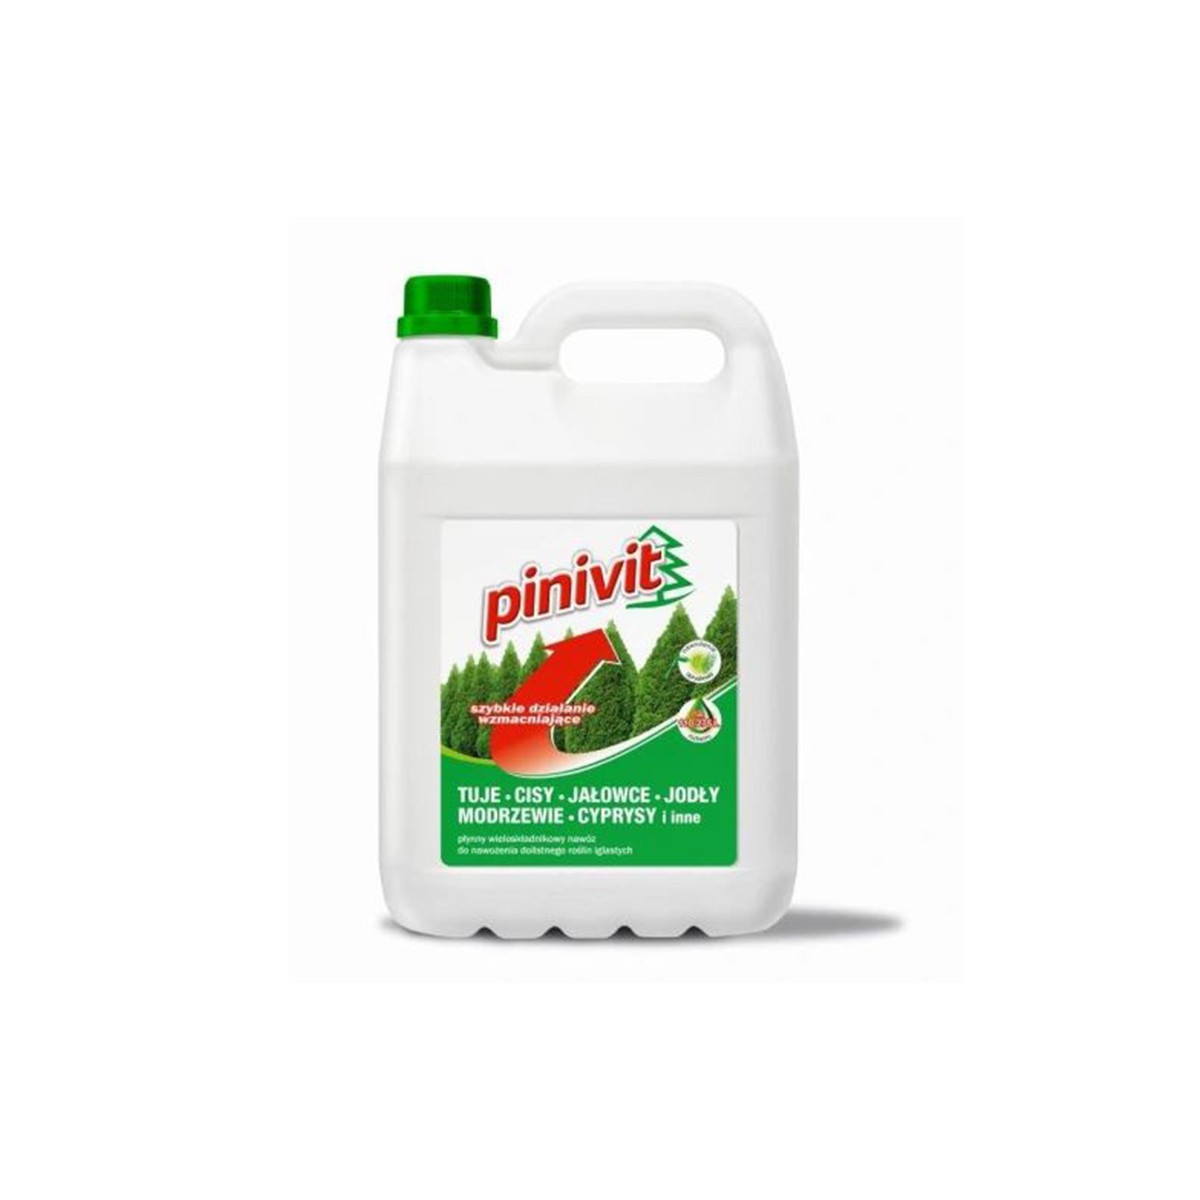 nawozy i preparaty - Pinivit płynny nawóz do roślin iglastych Grupa Inco S.A.